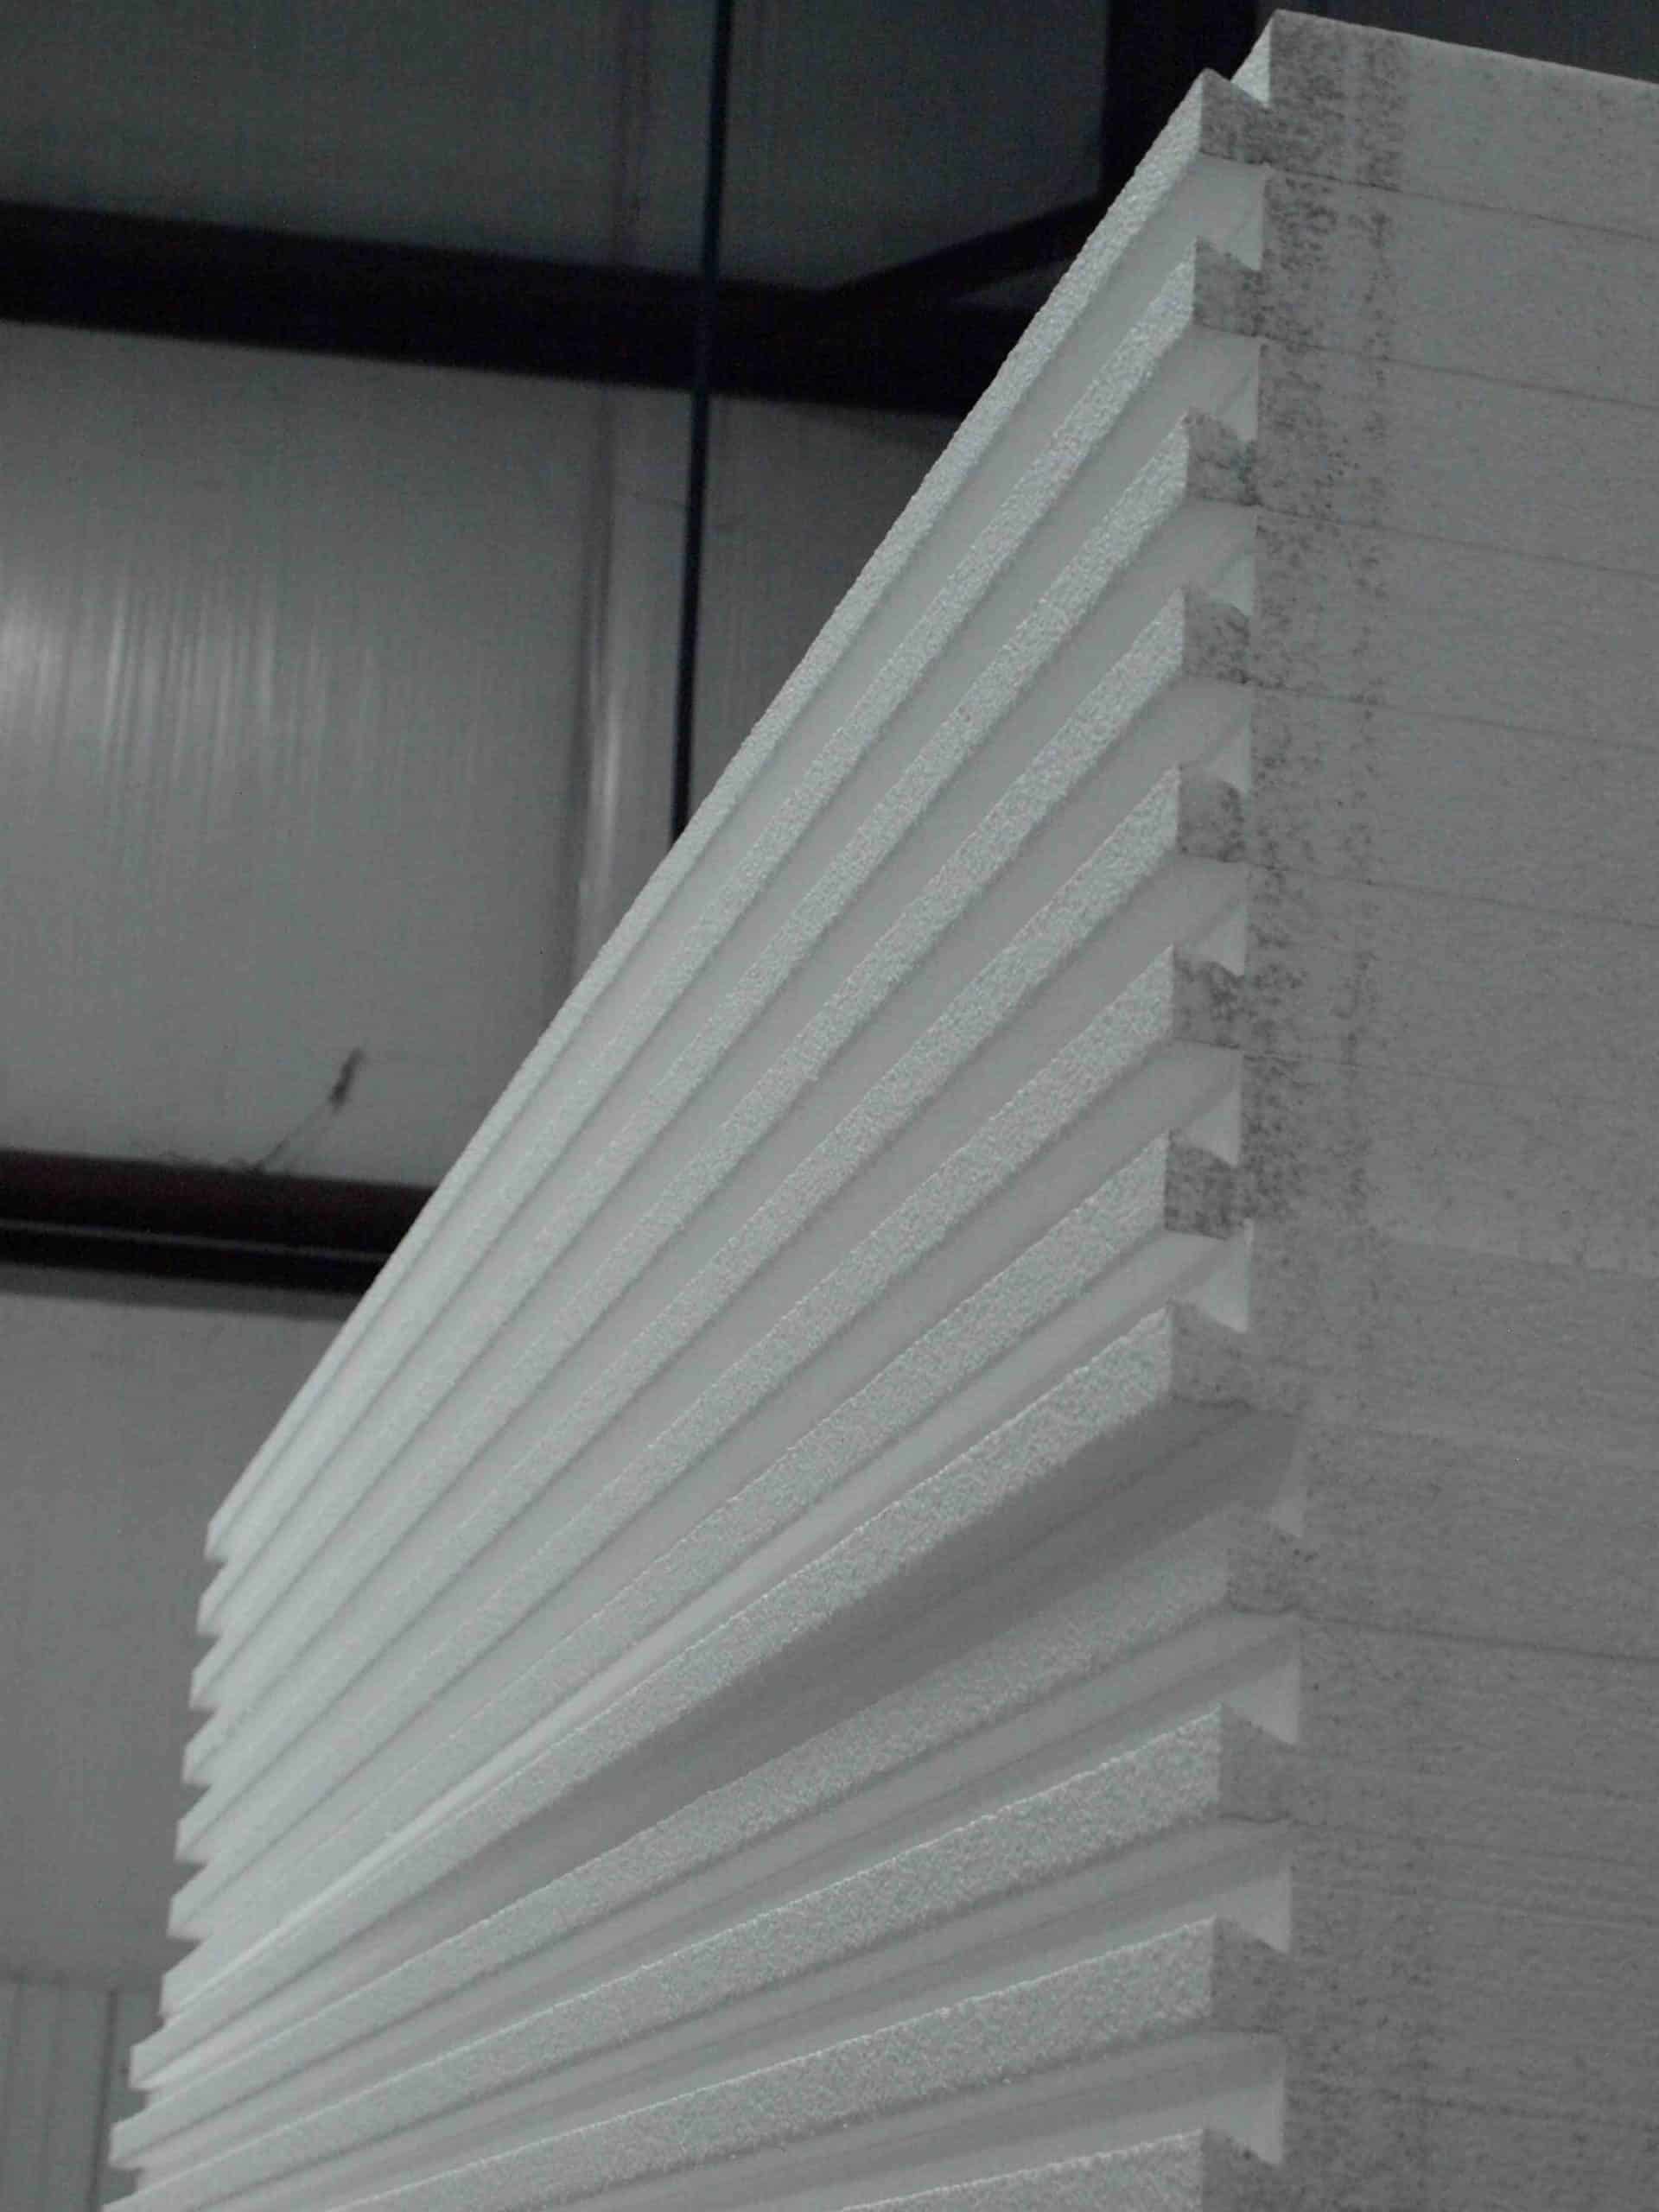 Comment recouvrir des plaques de polystyrène au plafond ?